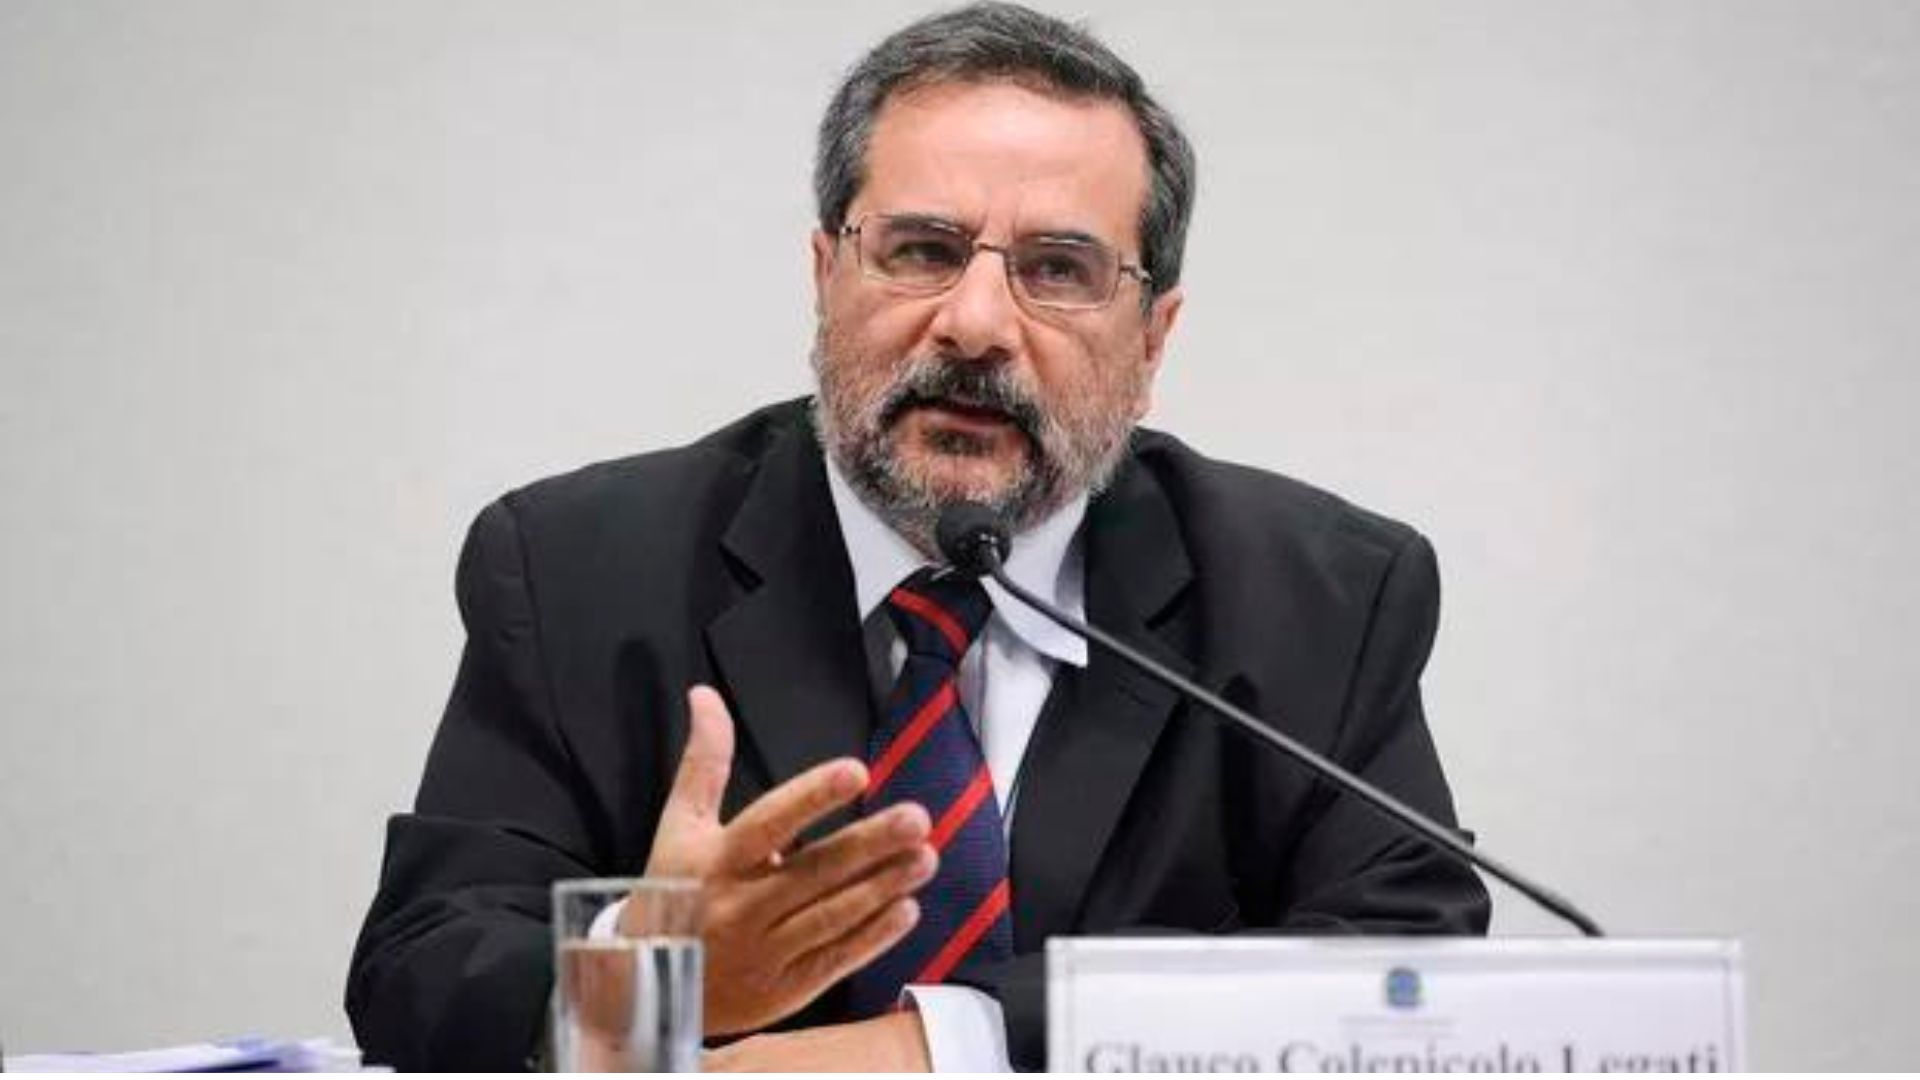 O engenheiro Glauco Colepicolo Legatti, ex-funcionário da Petrobras. Foto: Pedro França/Agência Senado